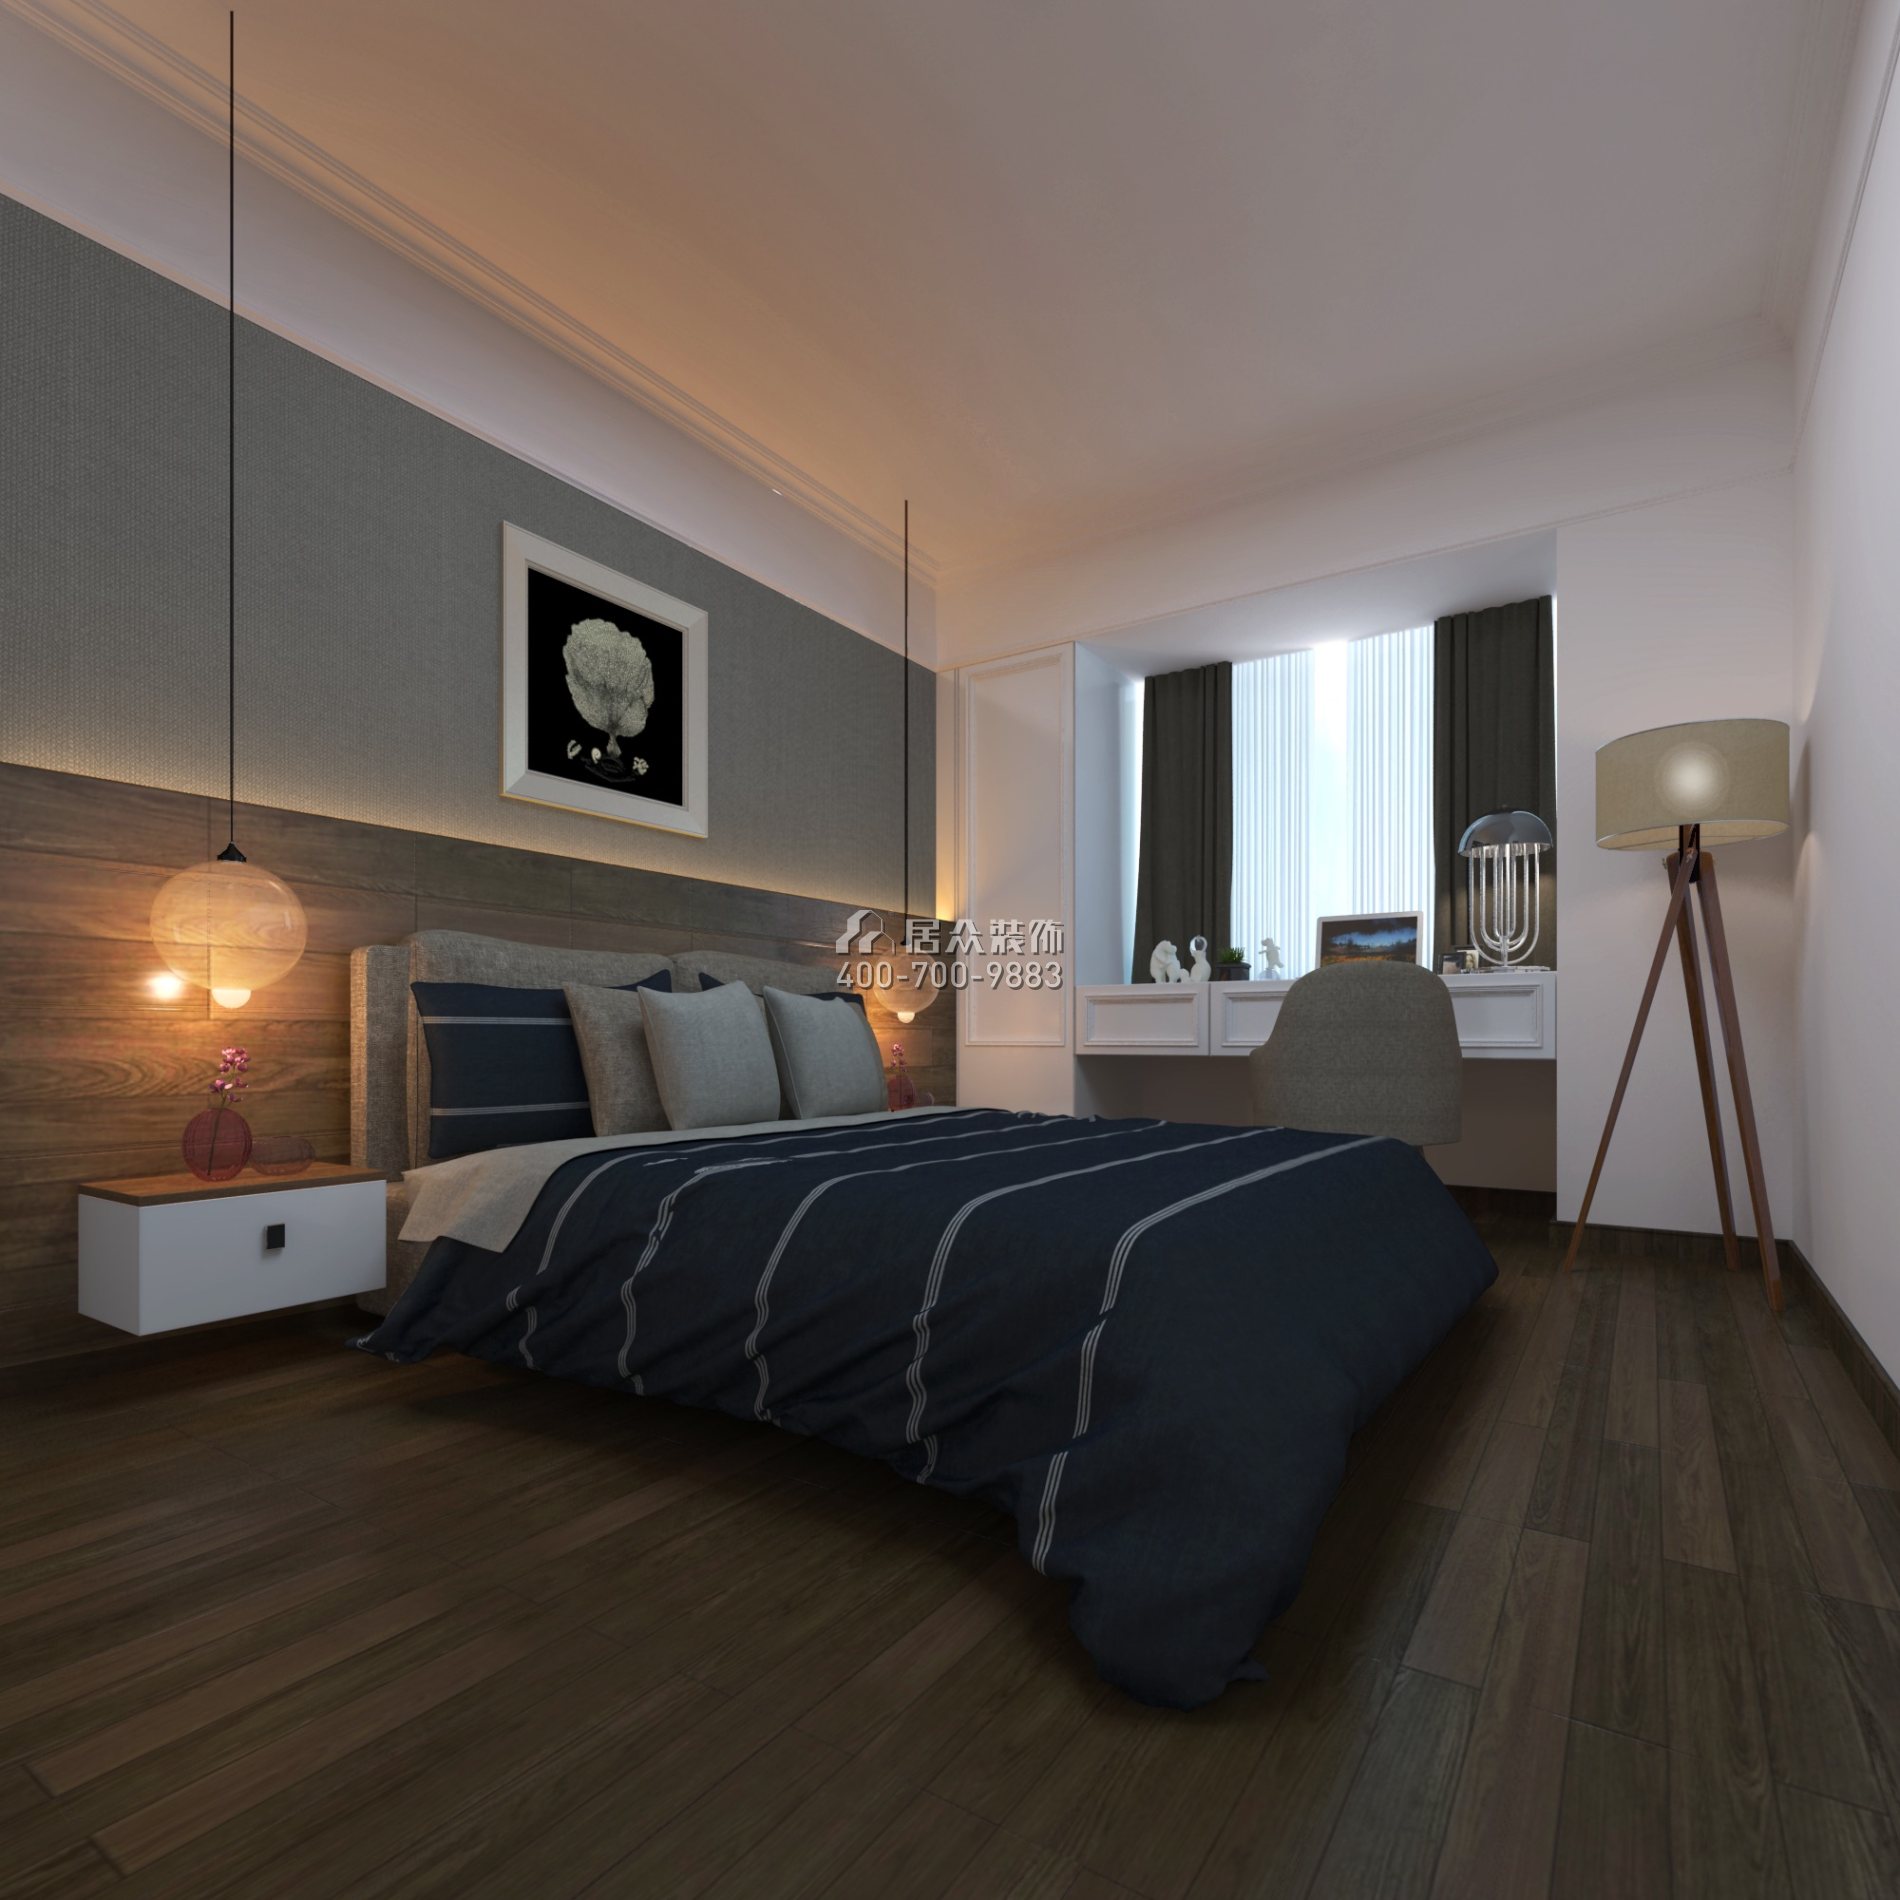 保利天汇128平方米现代简约风格平层户型卧室装修效果图